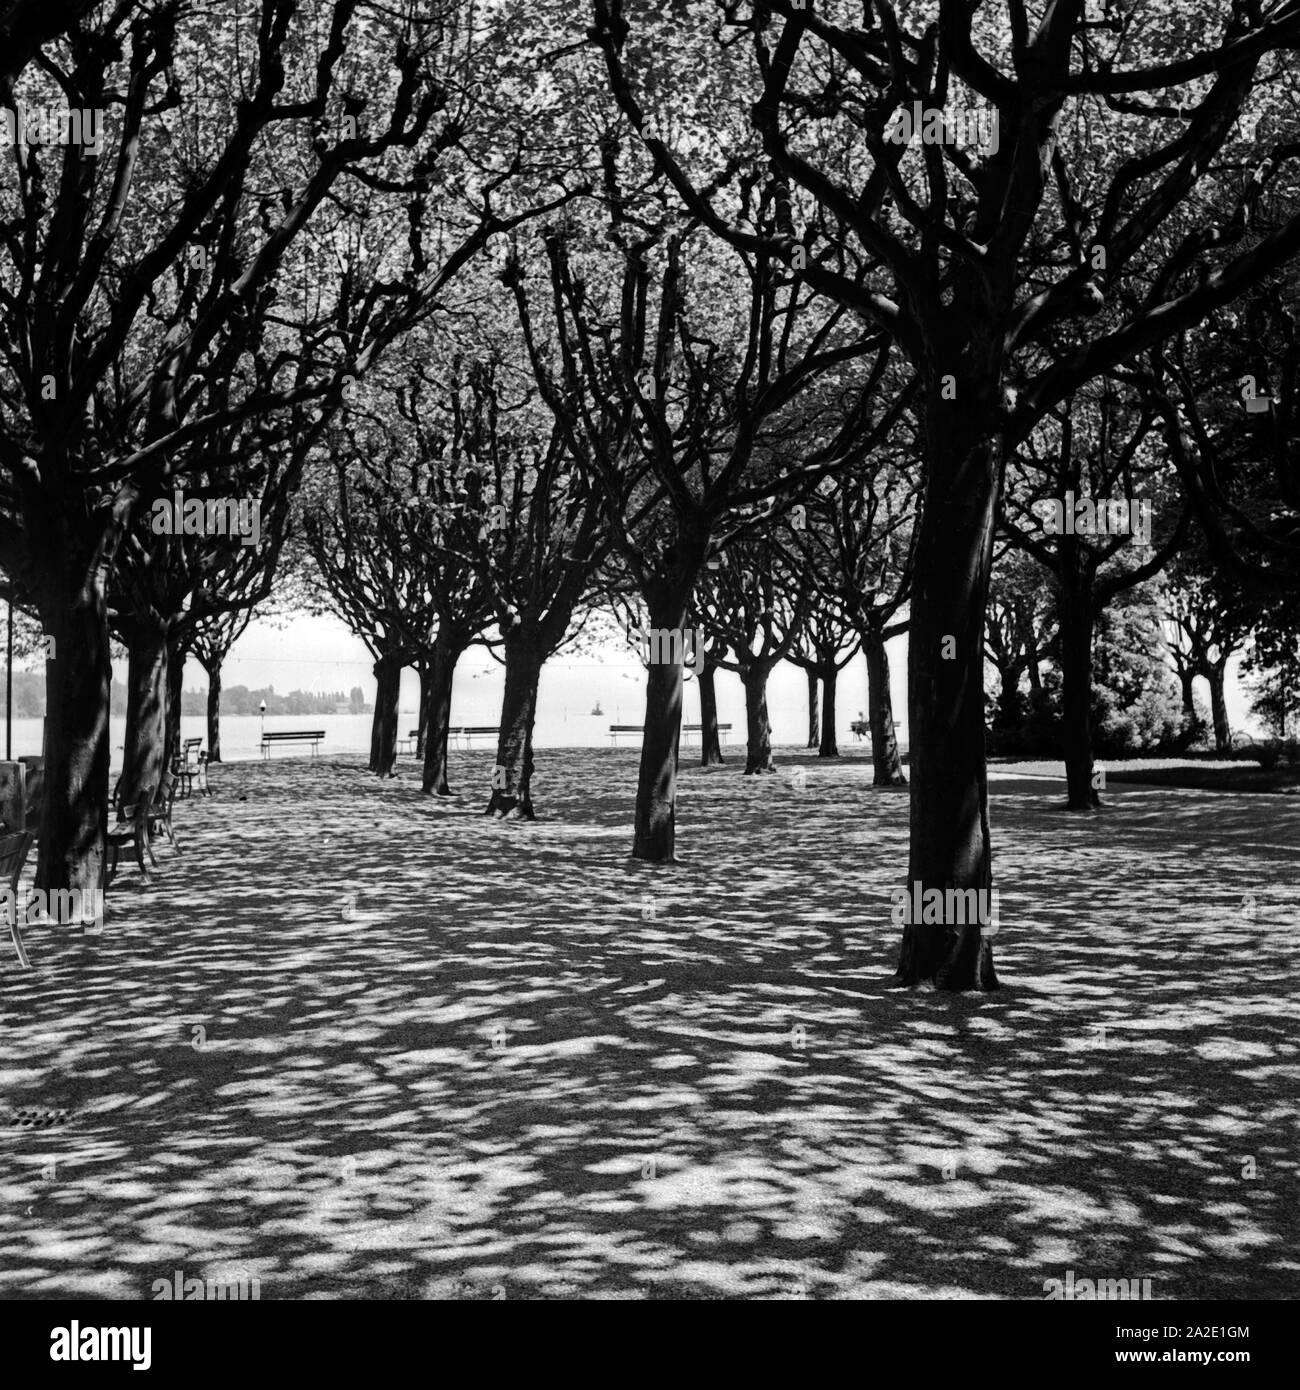 Bäume am Ufer des Bodensees in Konstanz, Deutschland 1930er Jahre. Alberi sulla riva del lago di Costanza, in Germania 1930s. Foto Stock